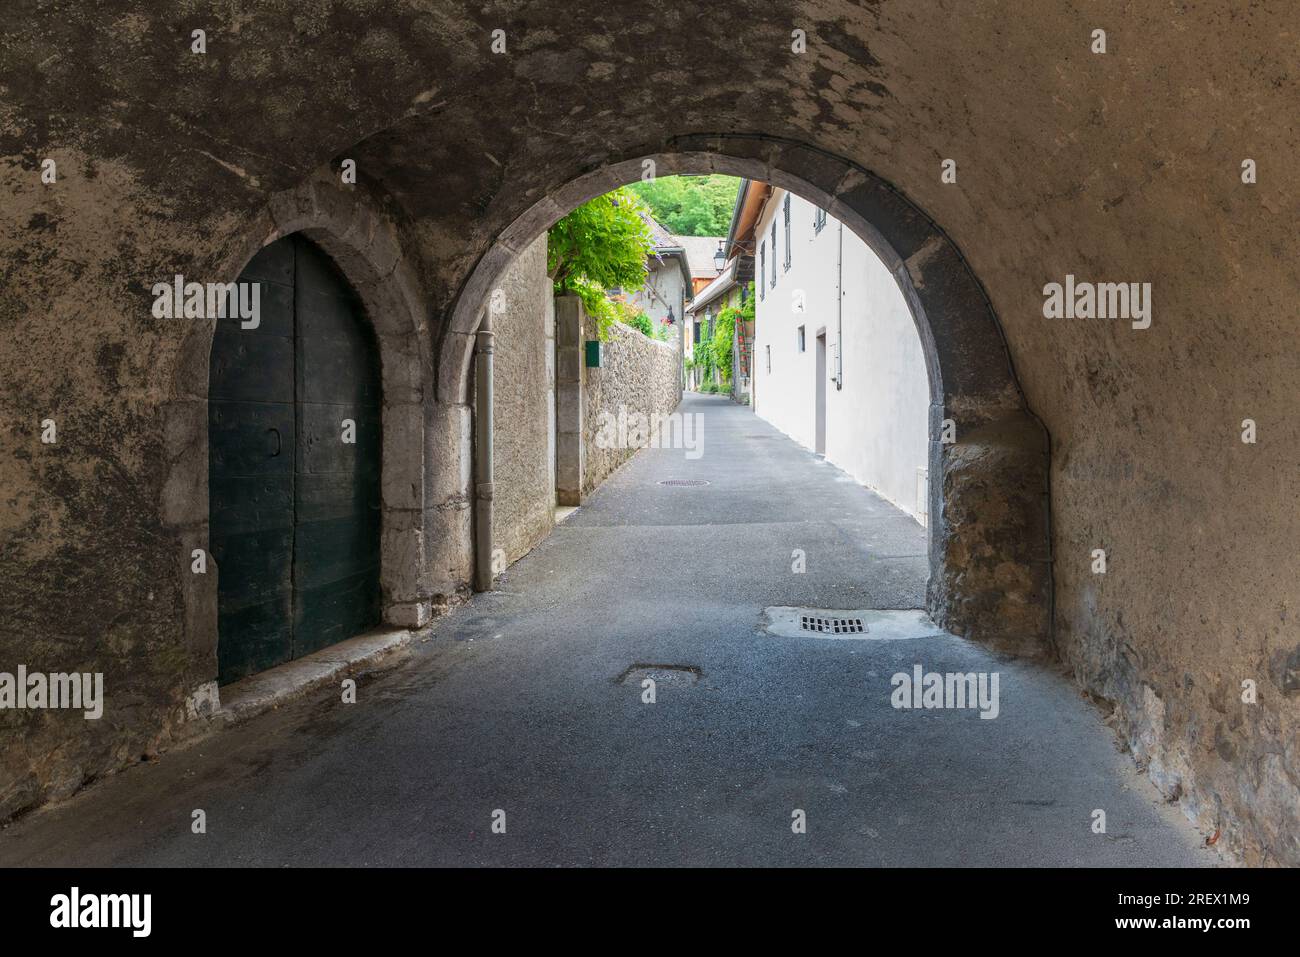 Stradine della città vecchia francese in Provenza. Arco e pareti in pietra, porte d'epoca e fiori sulle finestre Foto Stock